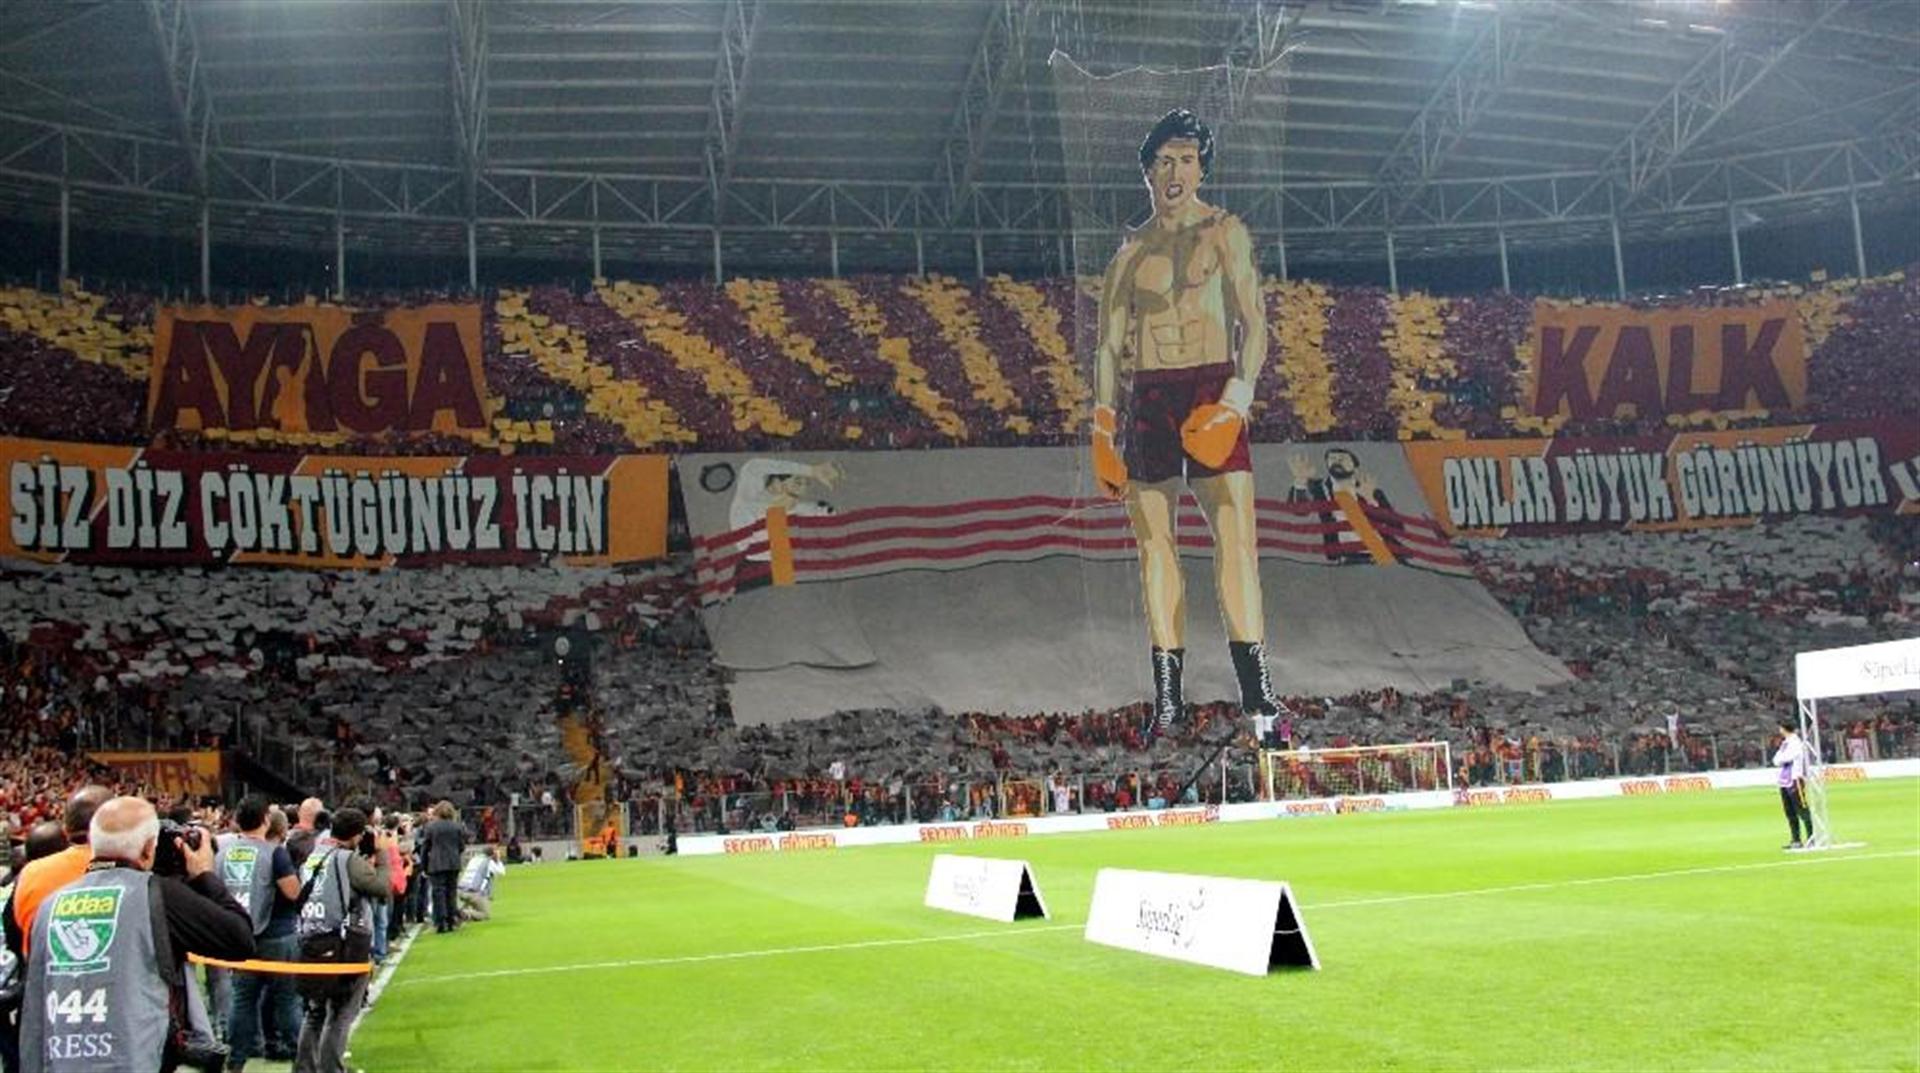 Galatasaray; Siz Diz Çöktüğünüz için onlar büyük görünüyor. Ayağa kalk